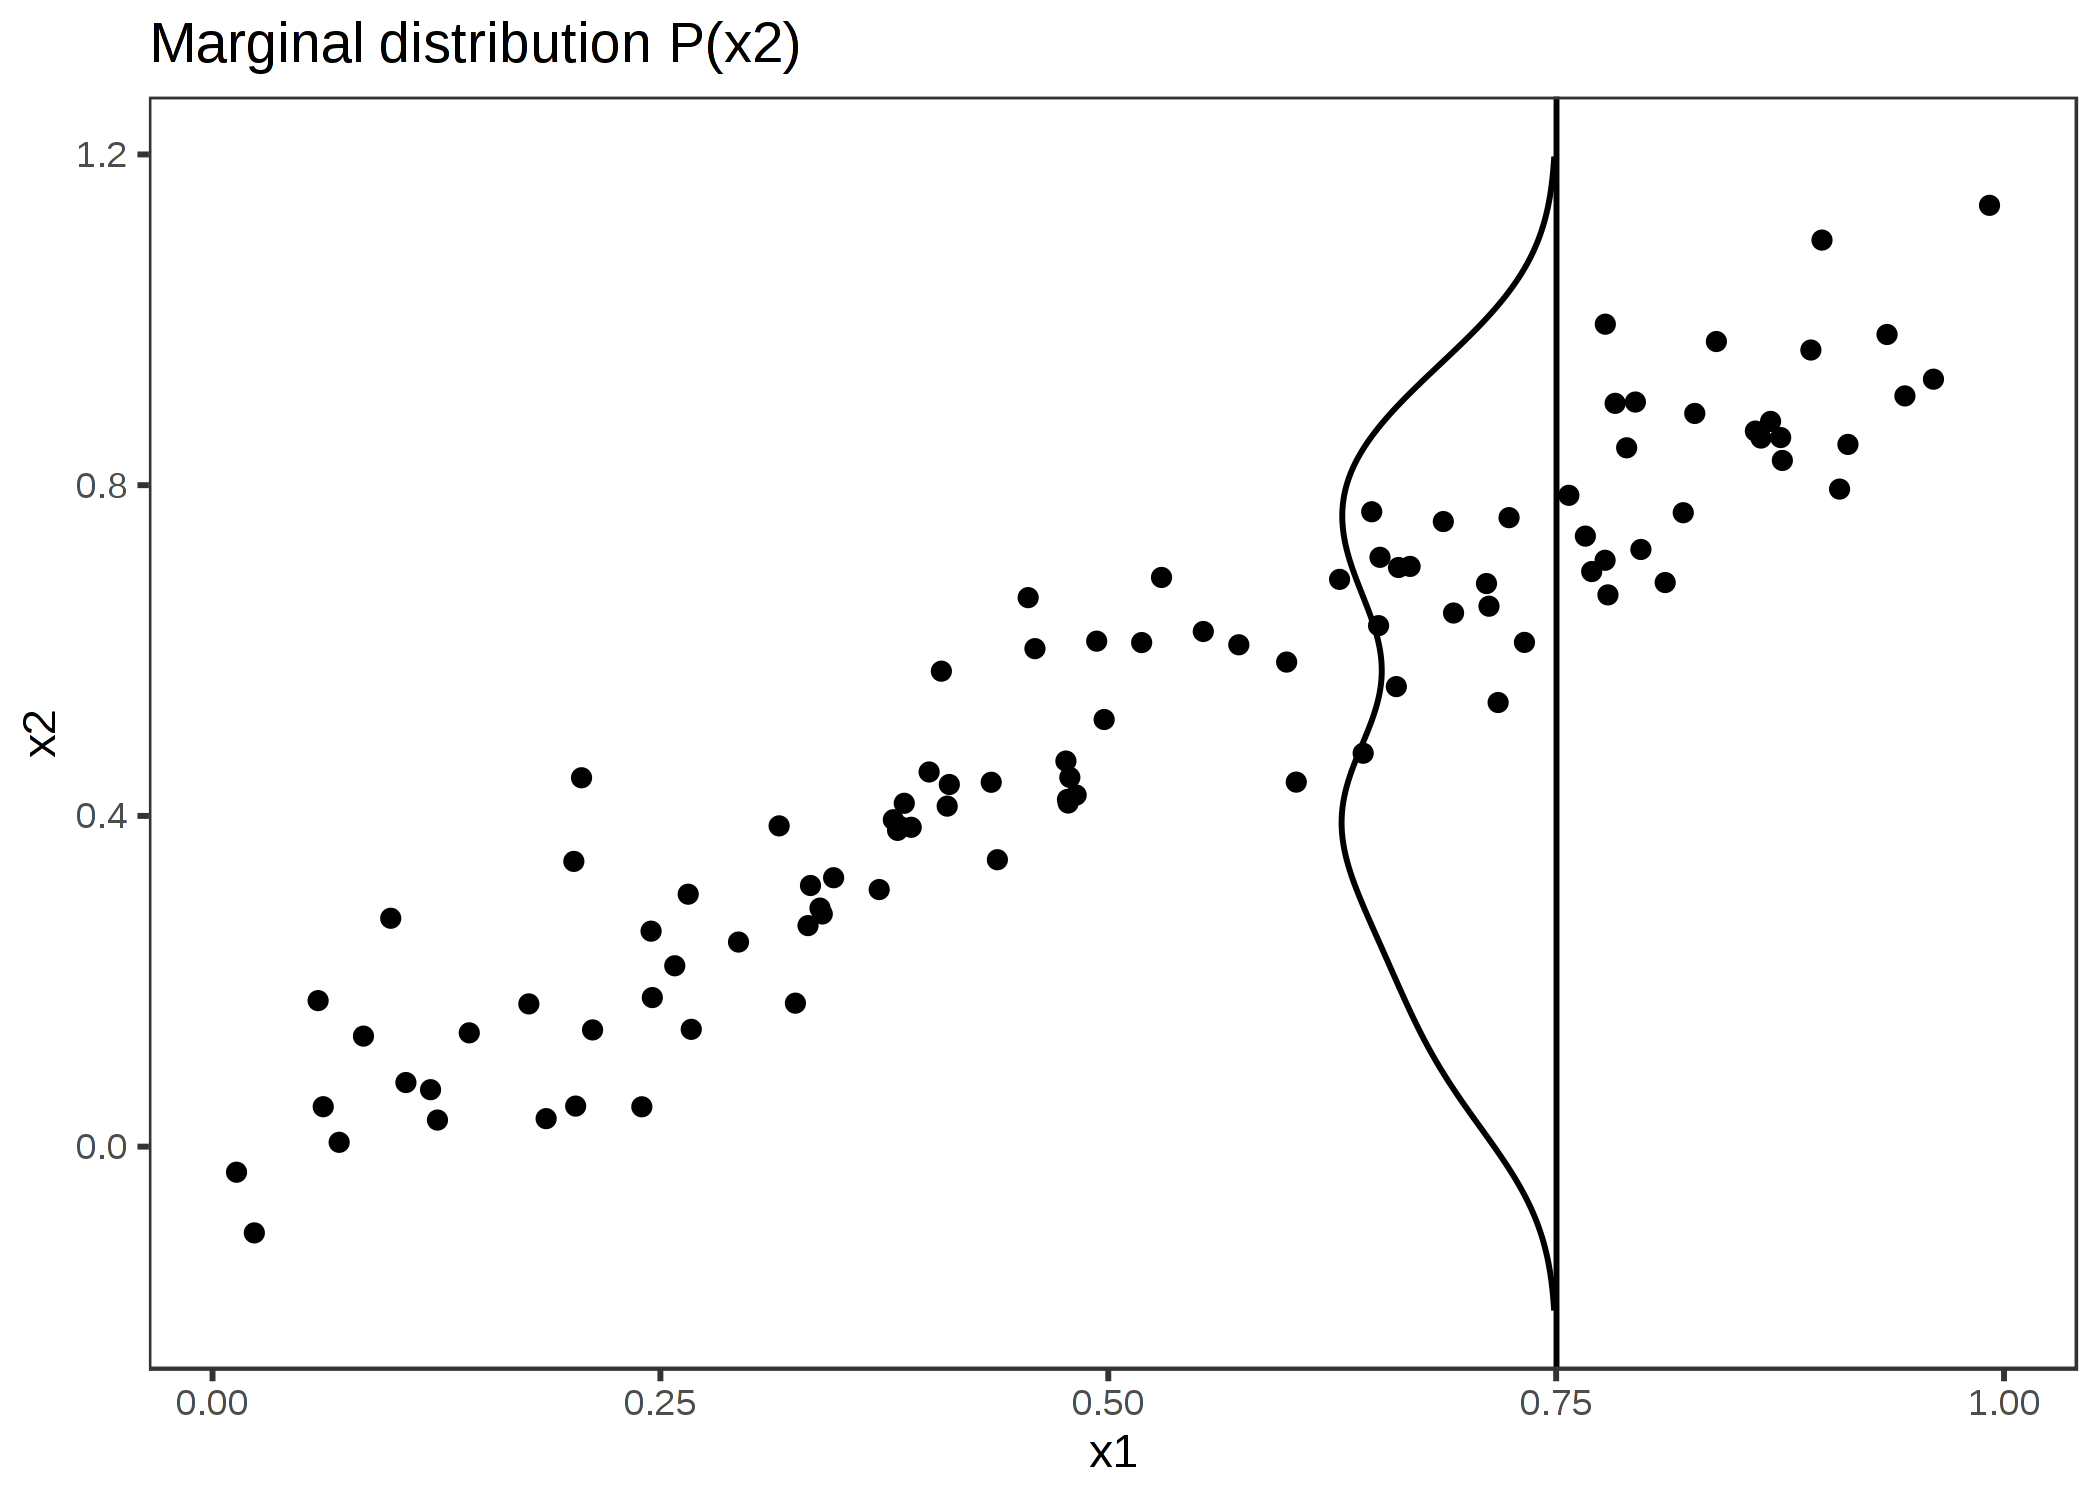 強く相関している特徴量 x1 と x2。 x1 が 0.75 の特徴量の影響を計算するために、PDP は全てのインスタンスの x1 を 0.75 に置き換え、x1=0.75 のときの x2 の分布が、全体の x2(縦軸) の分布と同じであると誤った仮定をしている。 これによって不自然な x1 と x2 の組み合わせ(例えば x2=0.2 で x1=0.75)が生まれ、PDP ではこれも平均効果の計算に含まれる。